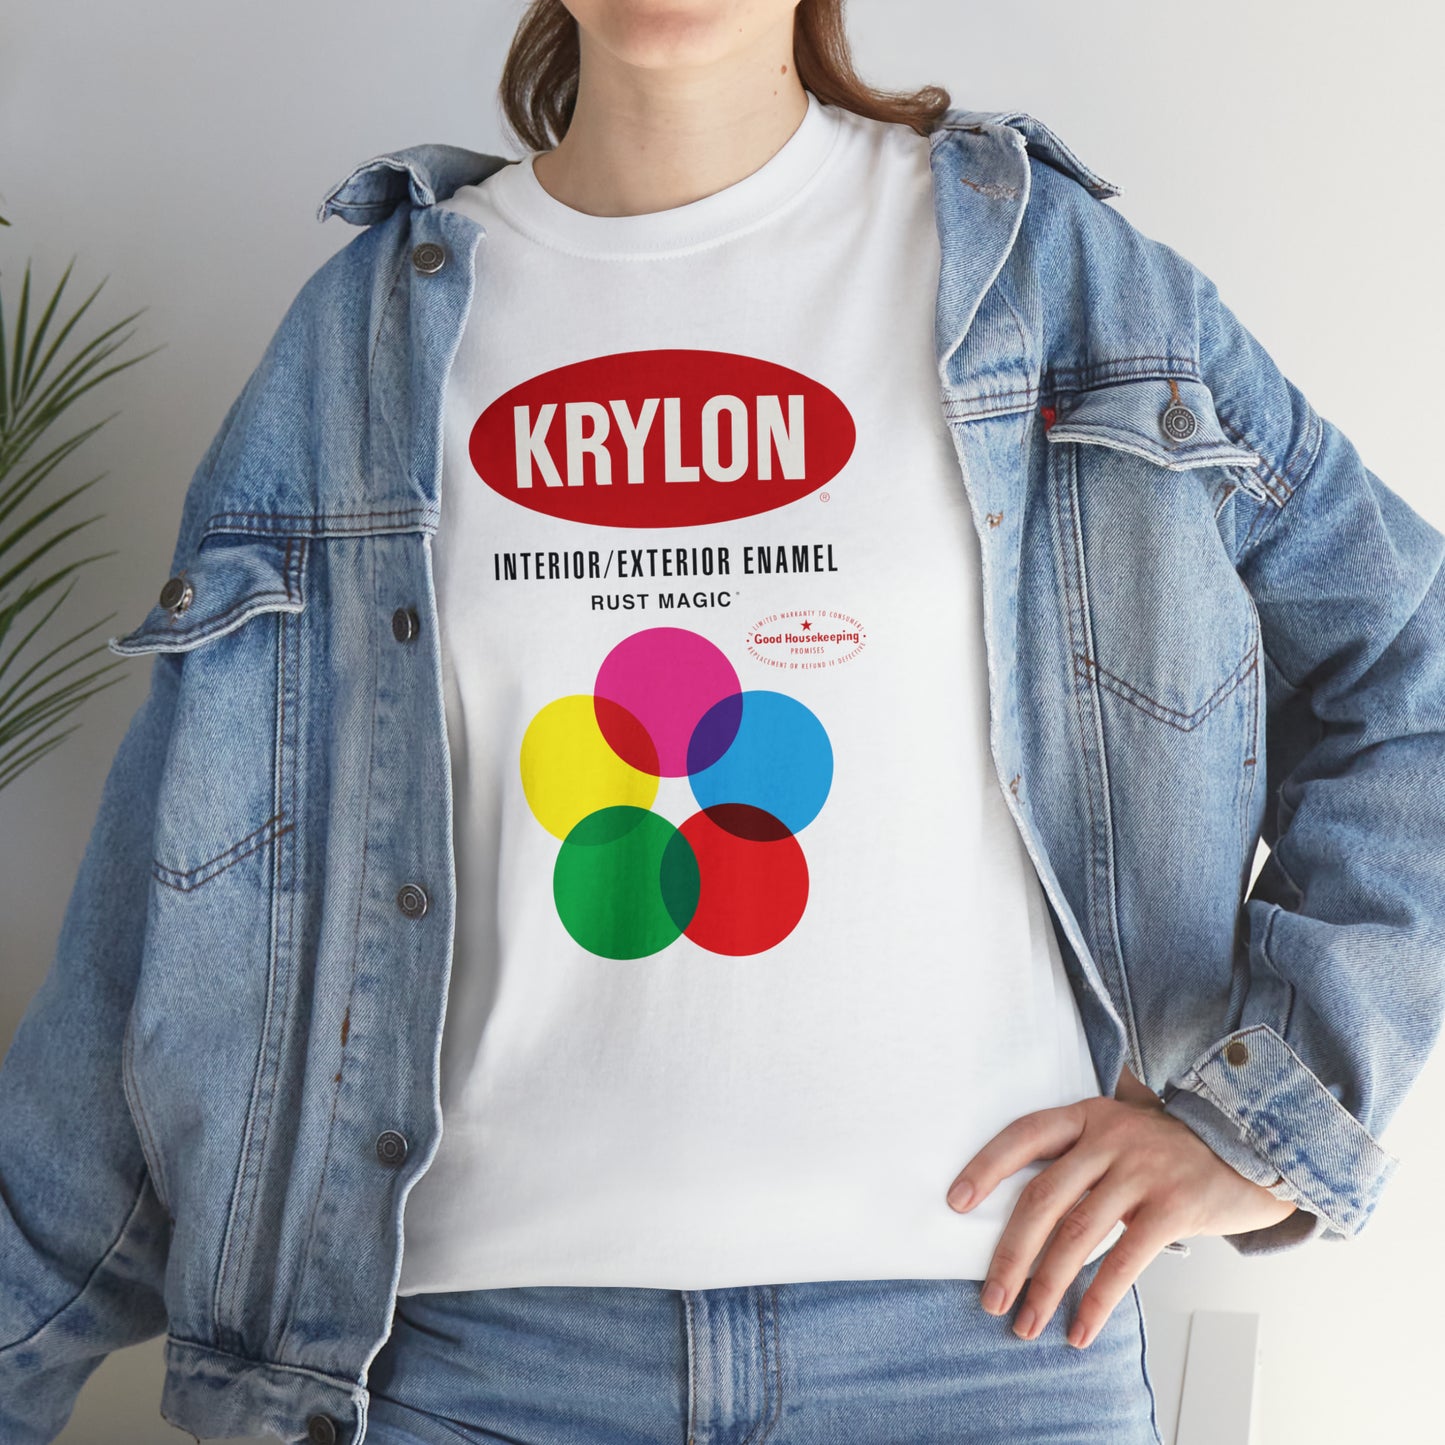 Krylon T-Shirt